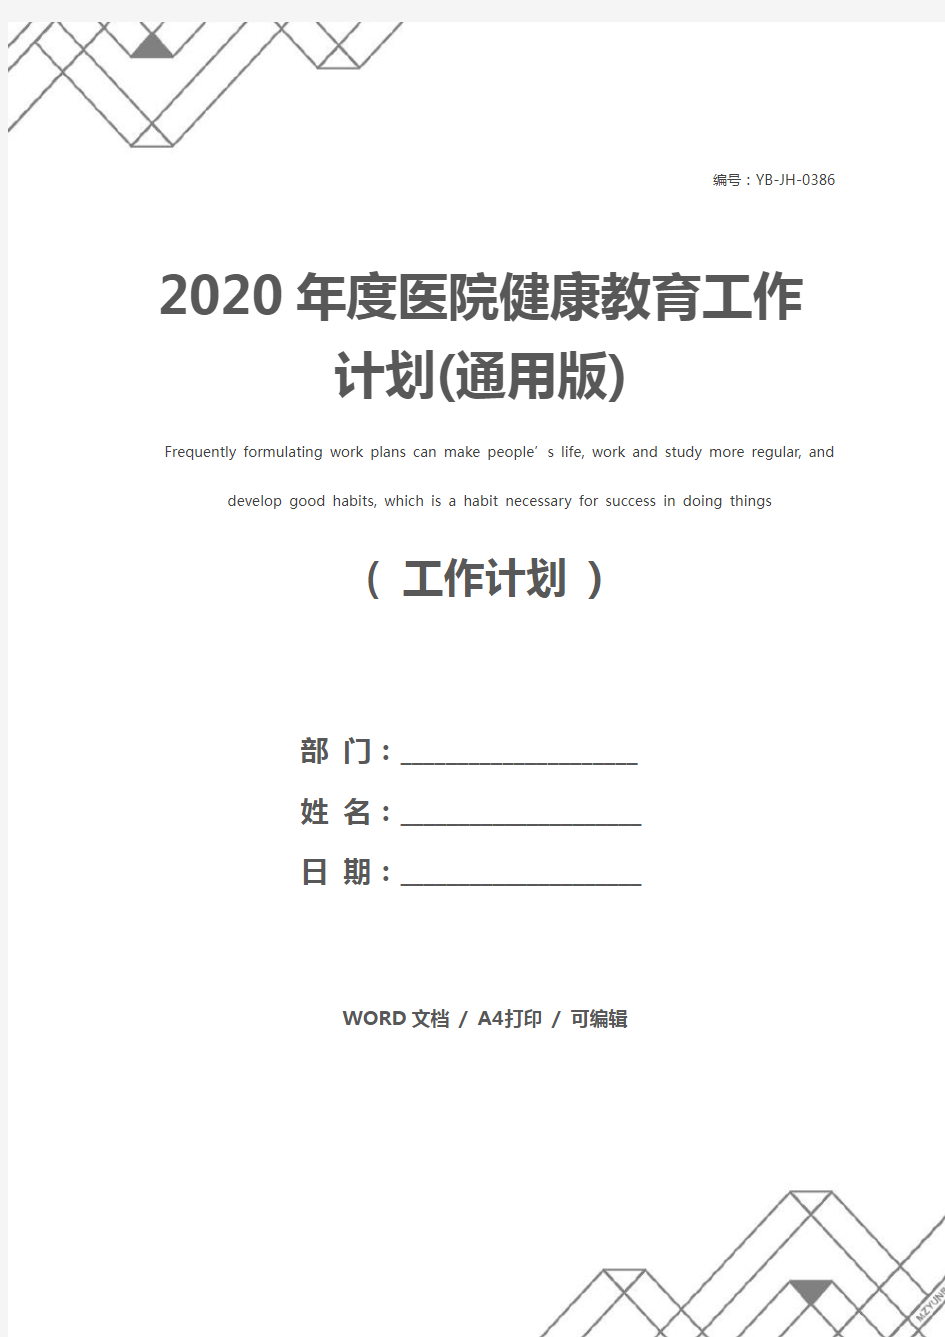 2020年度医院健康教育工作计划(通用版)